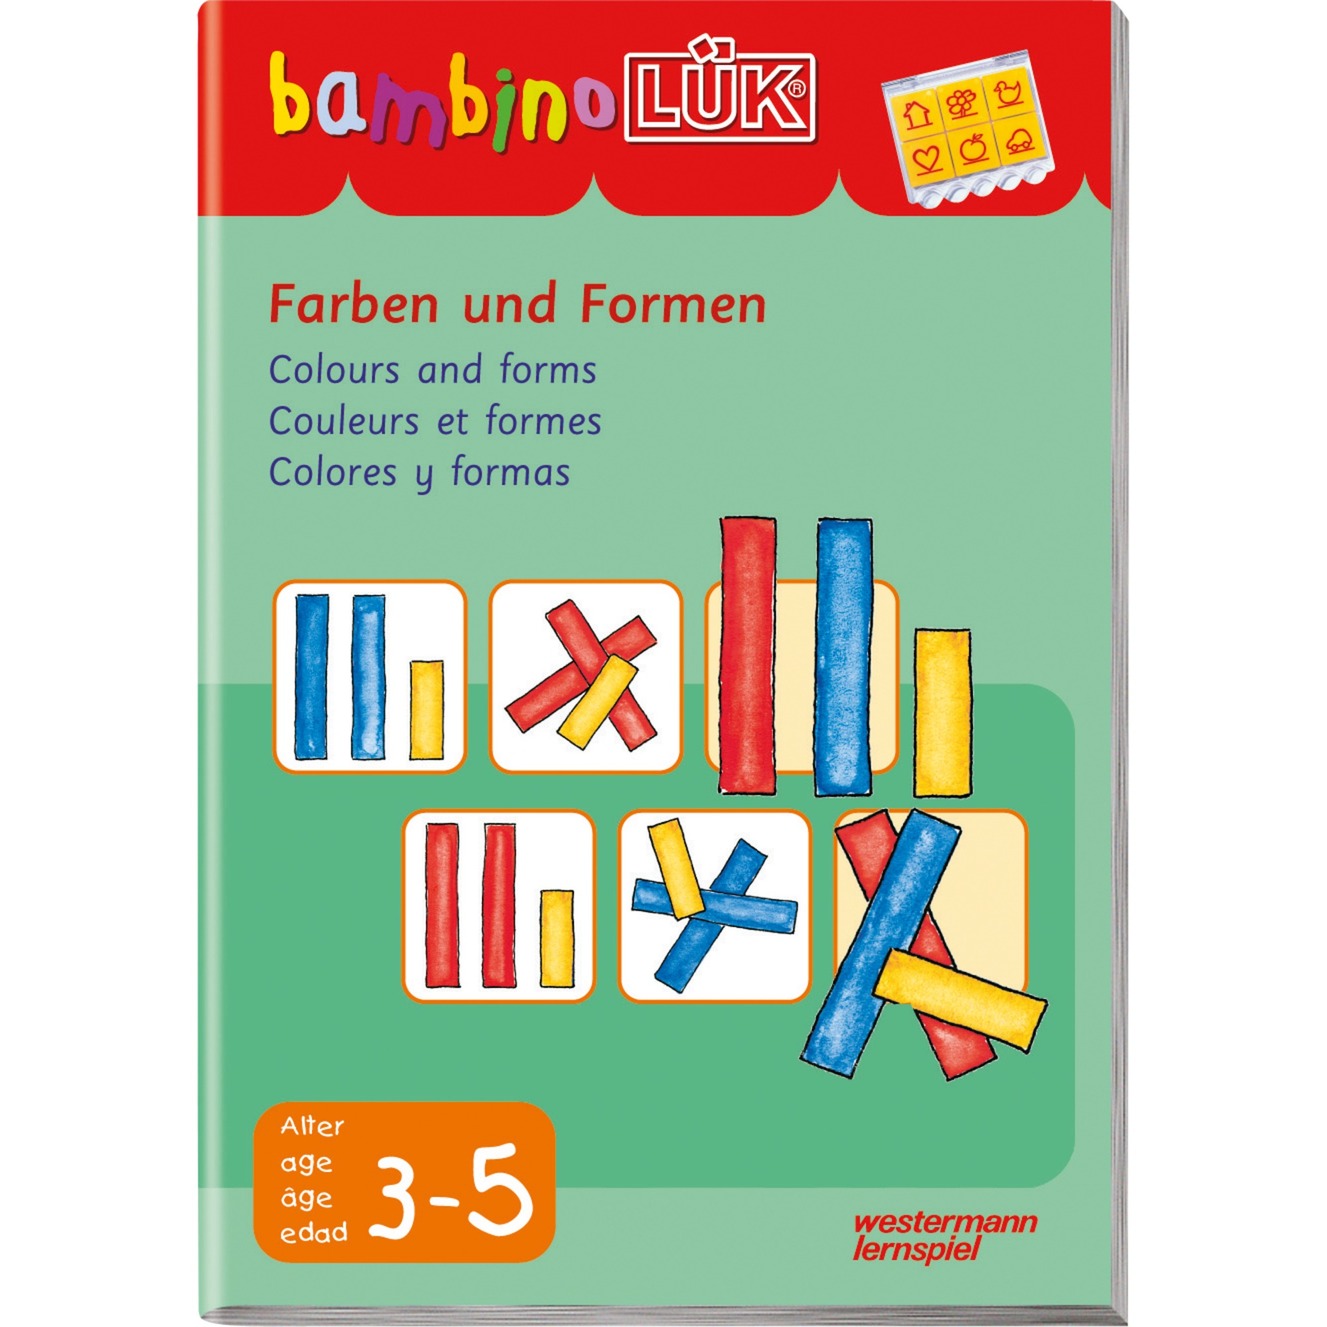 Farben und Formen książka dla dzieci, Książki edukacyjne